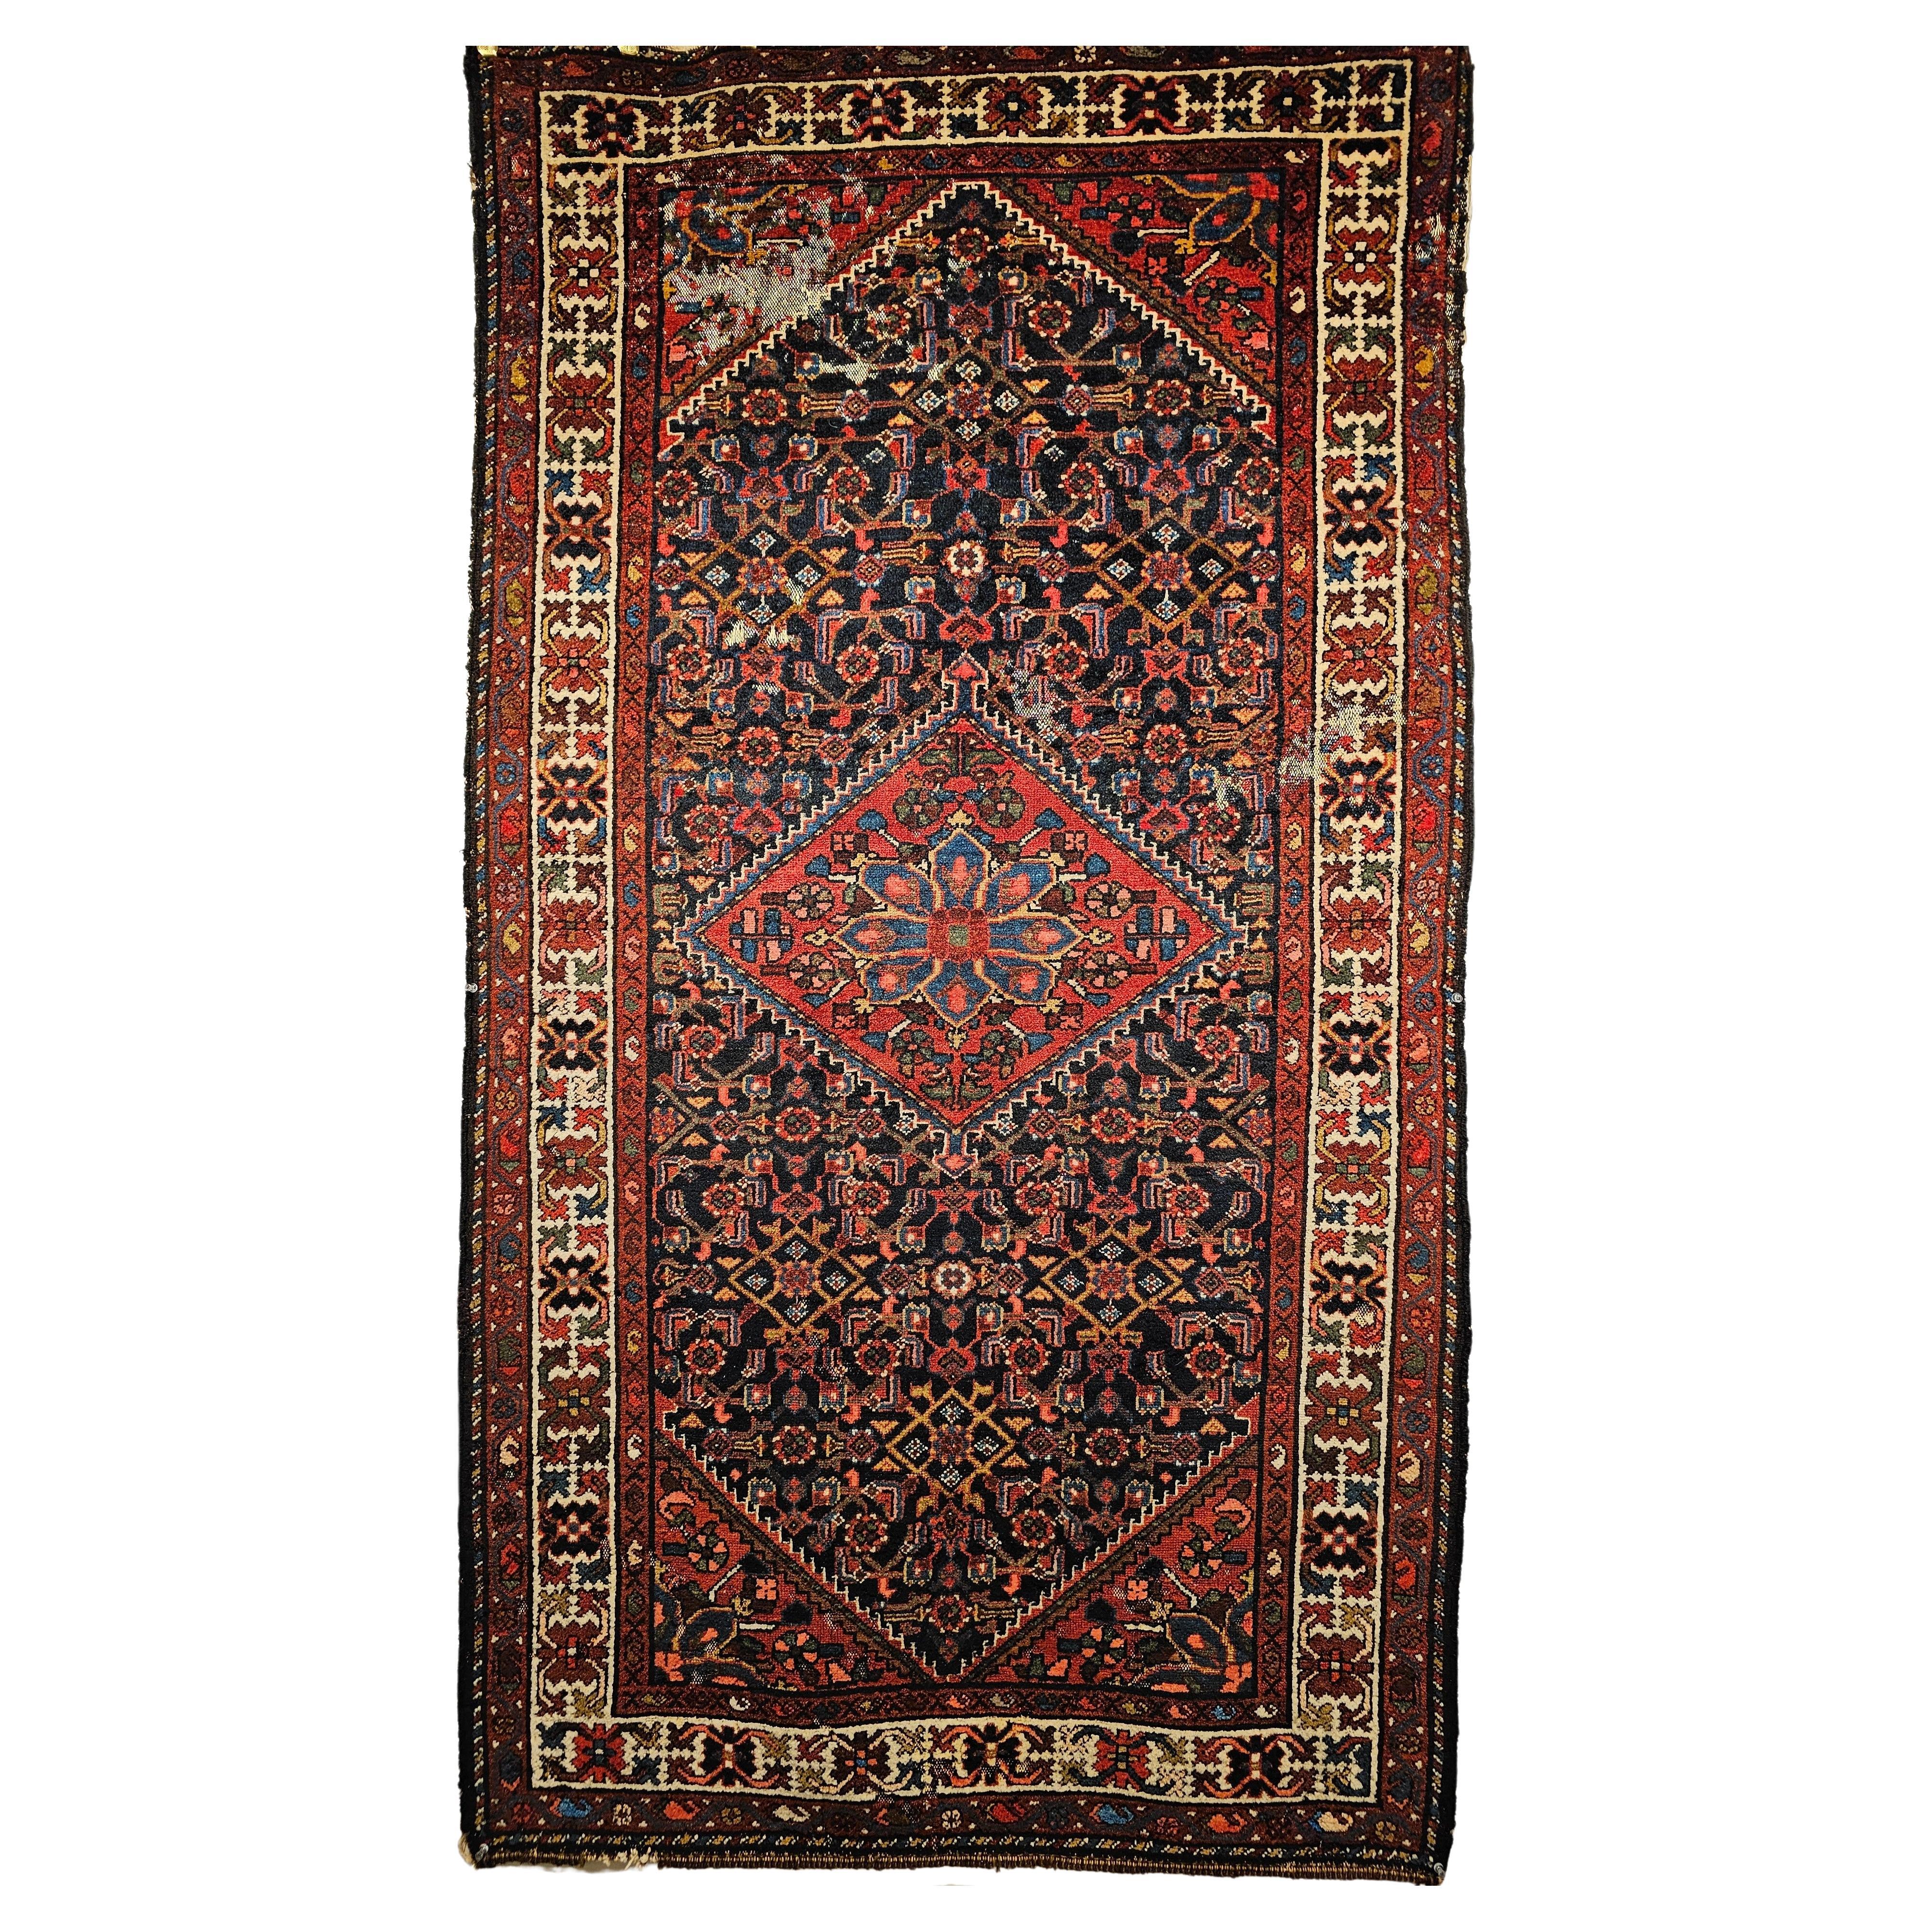 Persischer Malayer-Teppich mit Allover-Muster in Marine, Rot, Blau und Braun